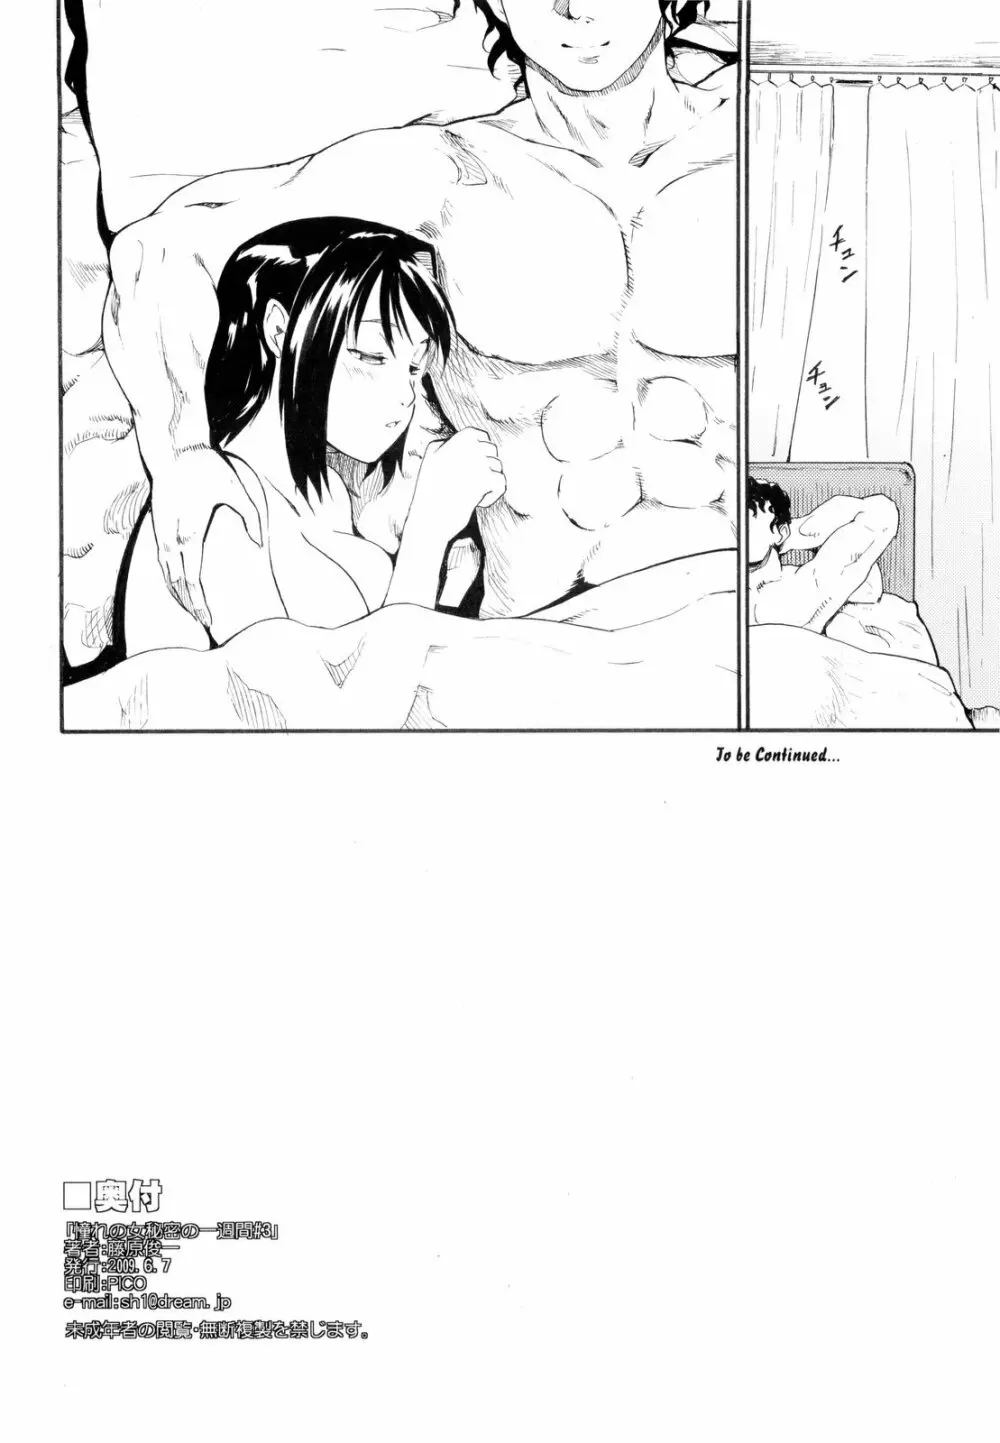 (コミコミ13) [PARANOIA CAT (藤原俊一)] 憧れの女 -秘密の一週間- #3 46ページ